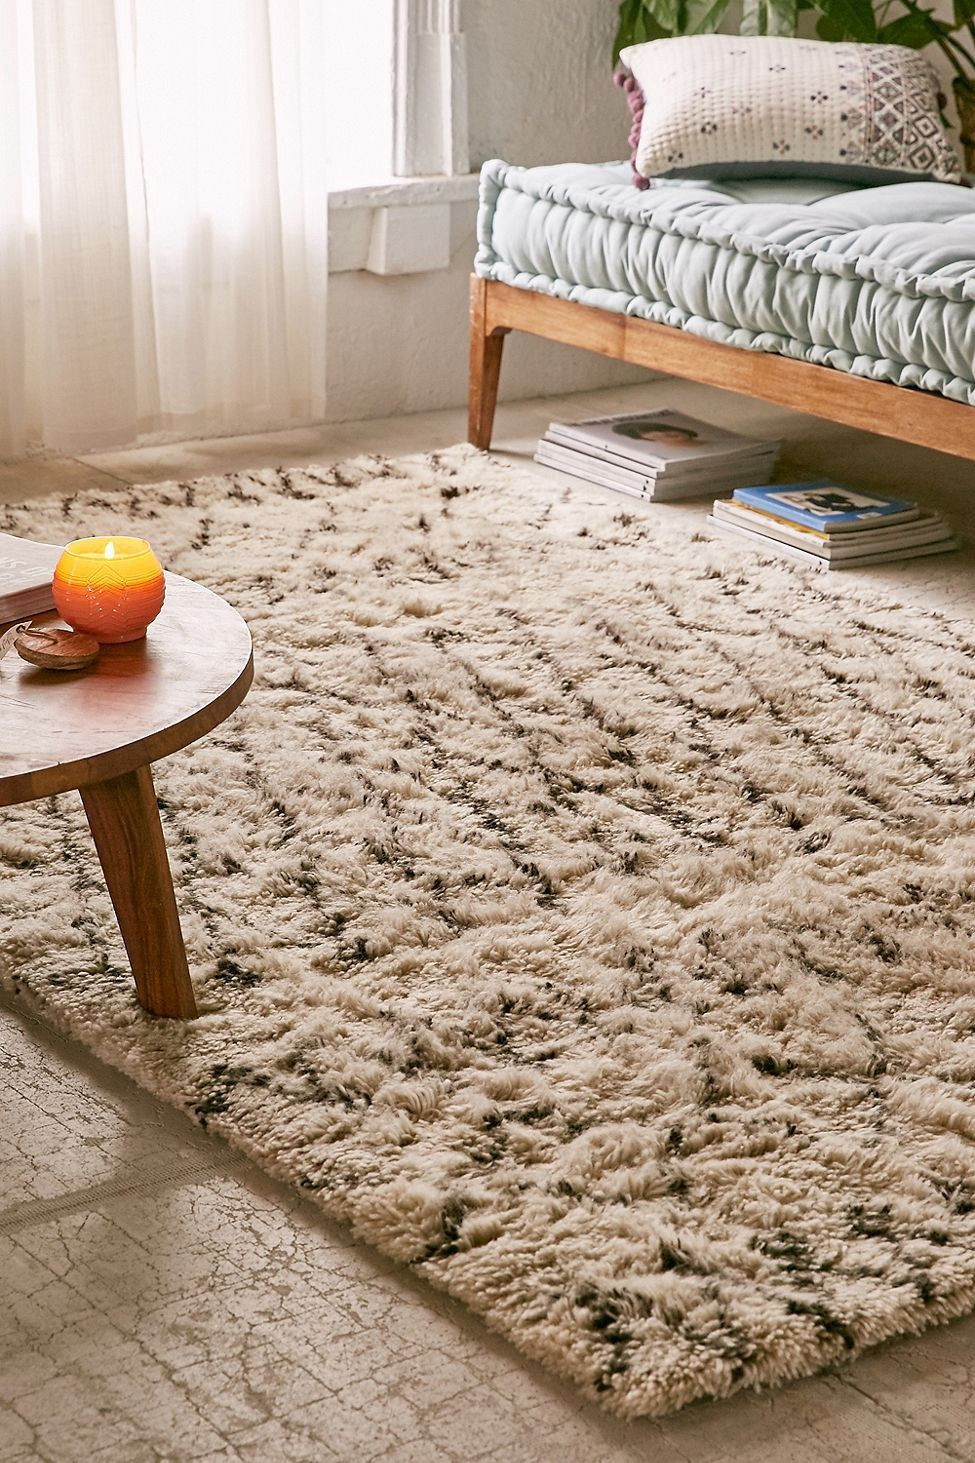 carpet in bedrooms vs hardwood flooring of urban outfitters cassadaga tufted shag rug 2x8 runner products with urban outfitters cassadaga tufted shag rug 2x8 runner